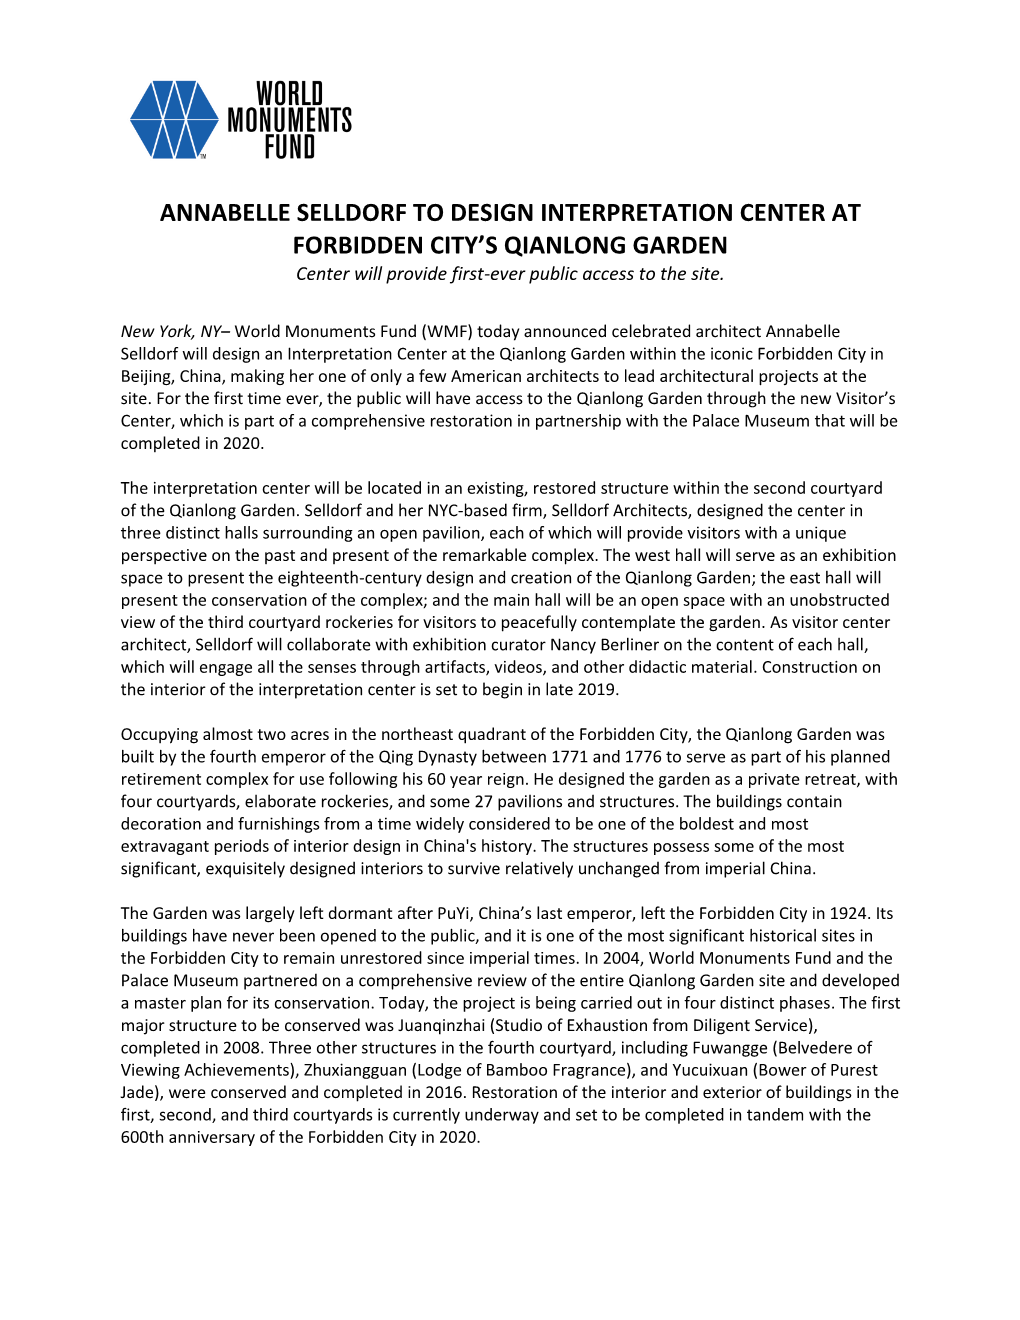 Annabelle Selldorf to Design Interpretation Center at Forbidden City's Qianlong Garden